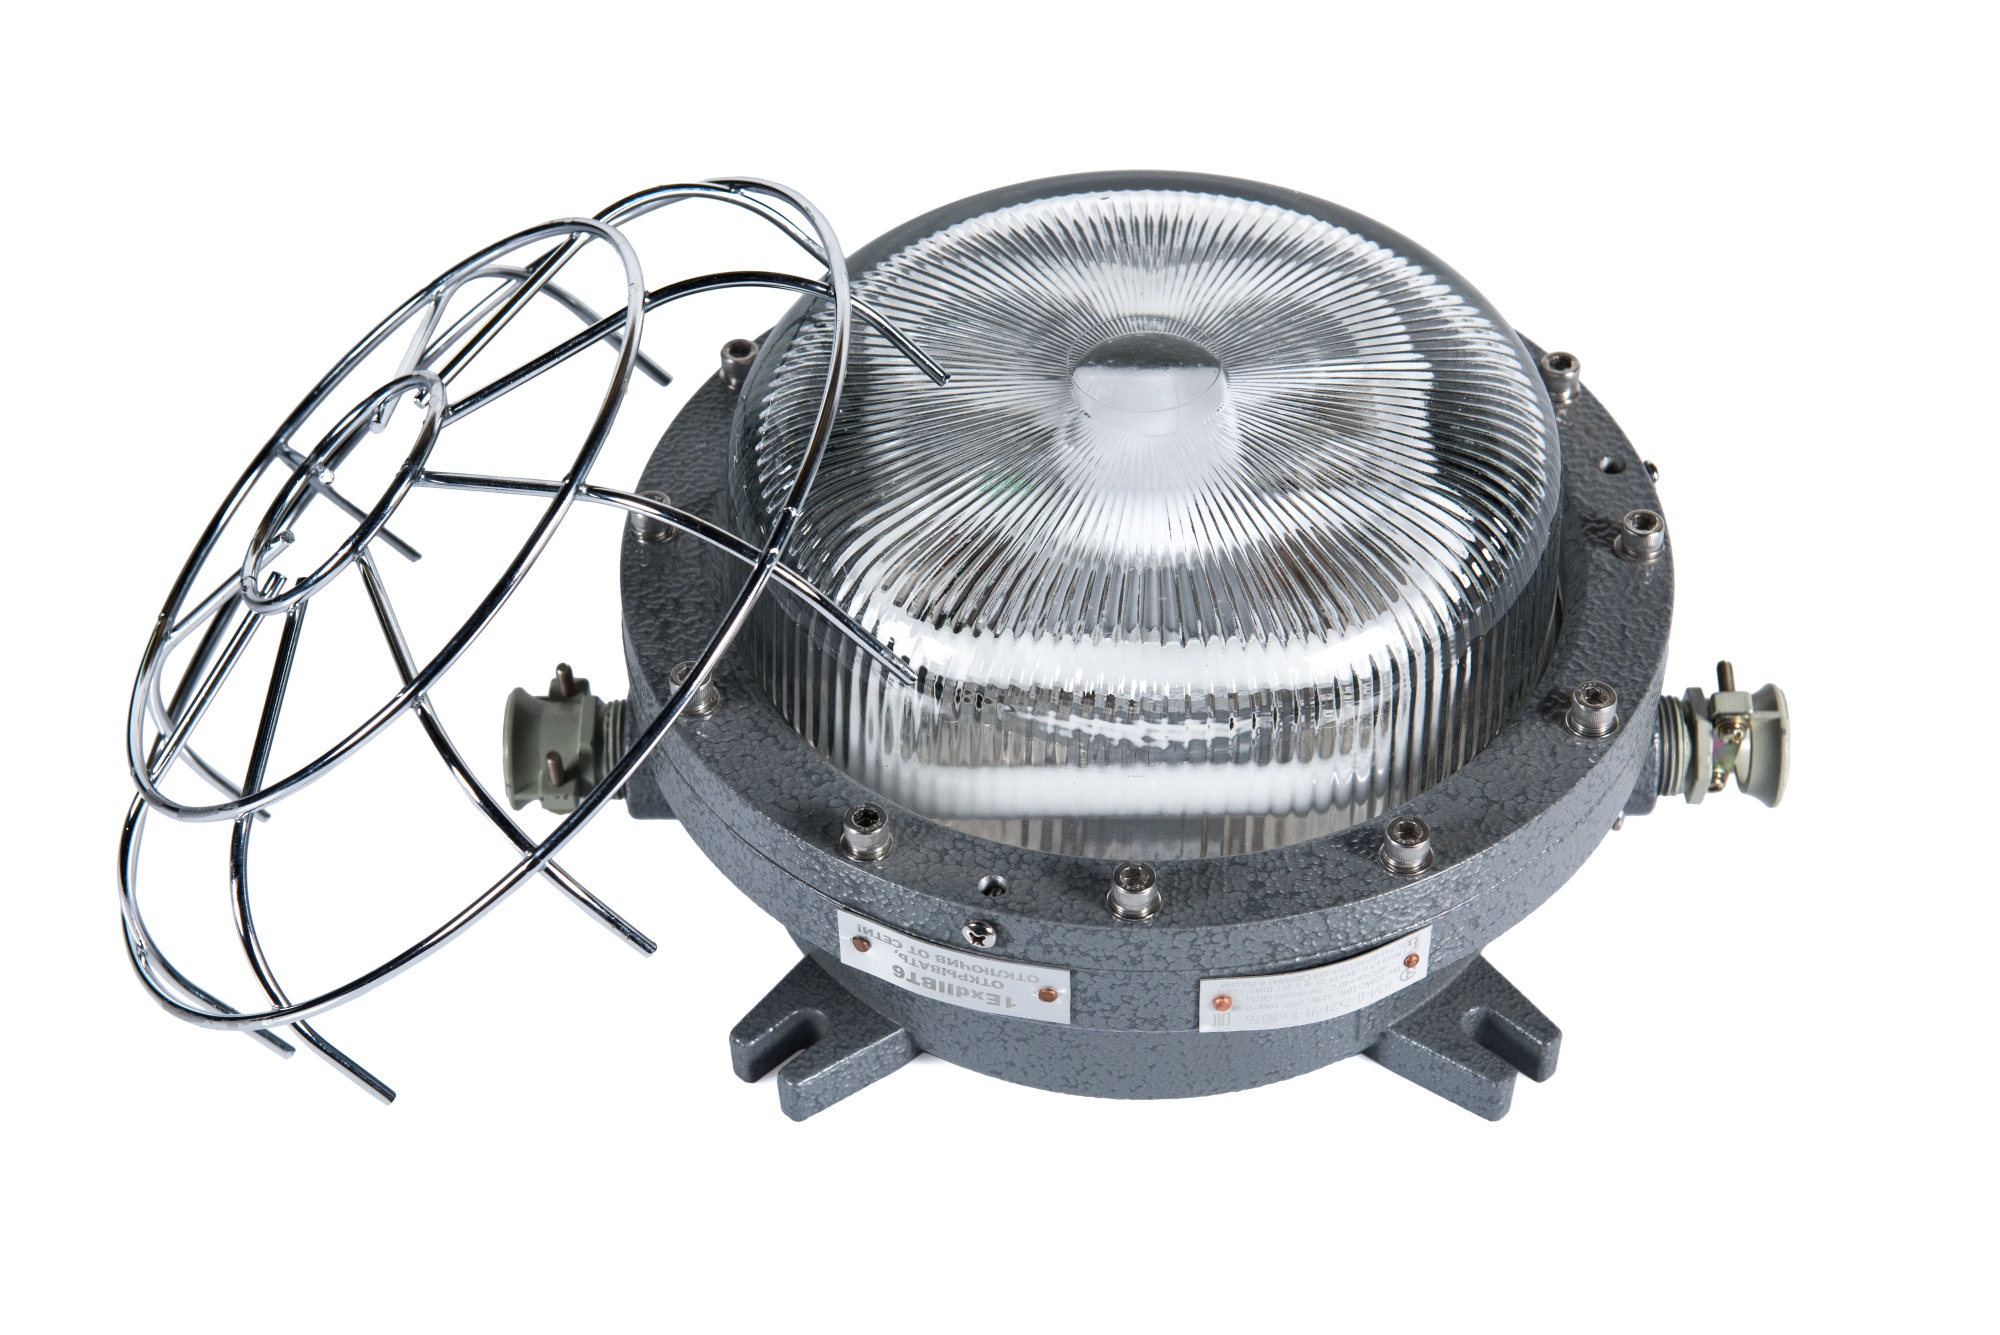 Светильники для компактных люминесцентных ламп  ВЭЛ-Д